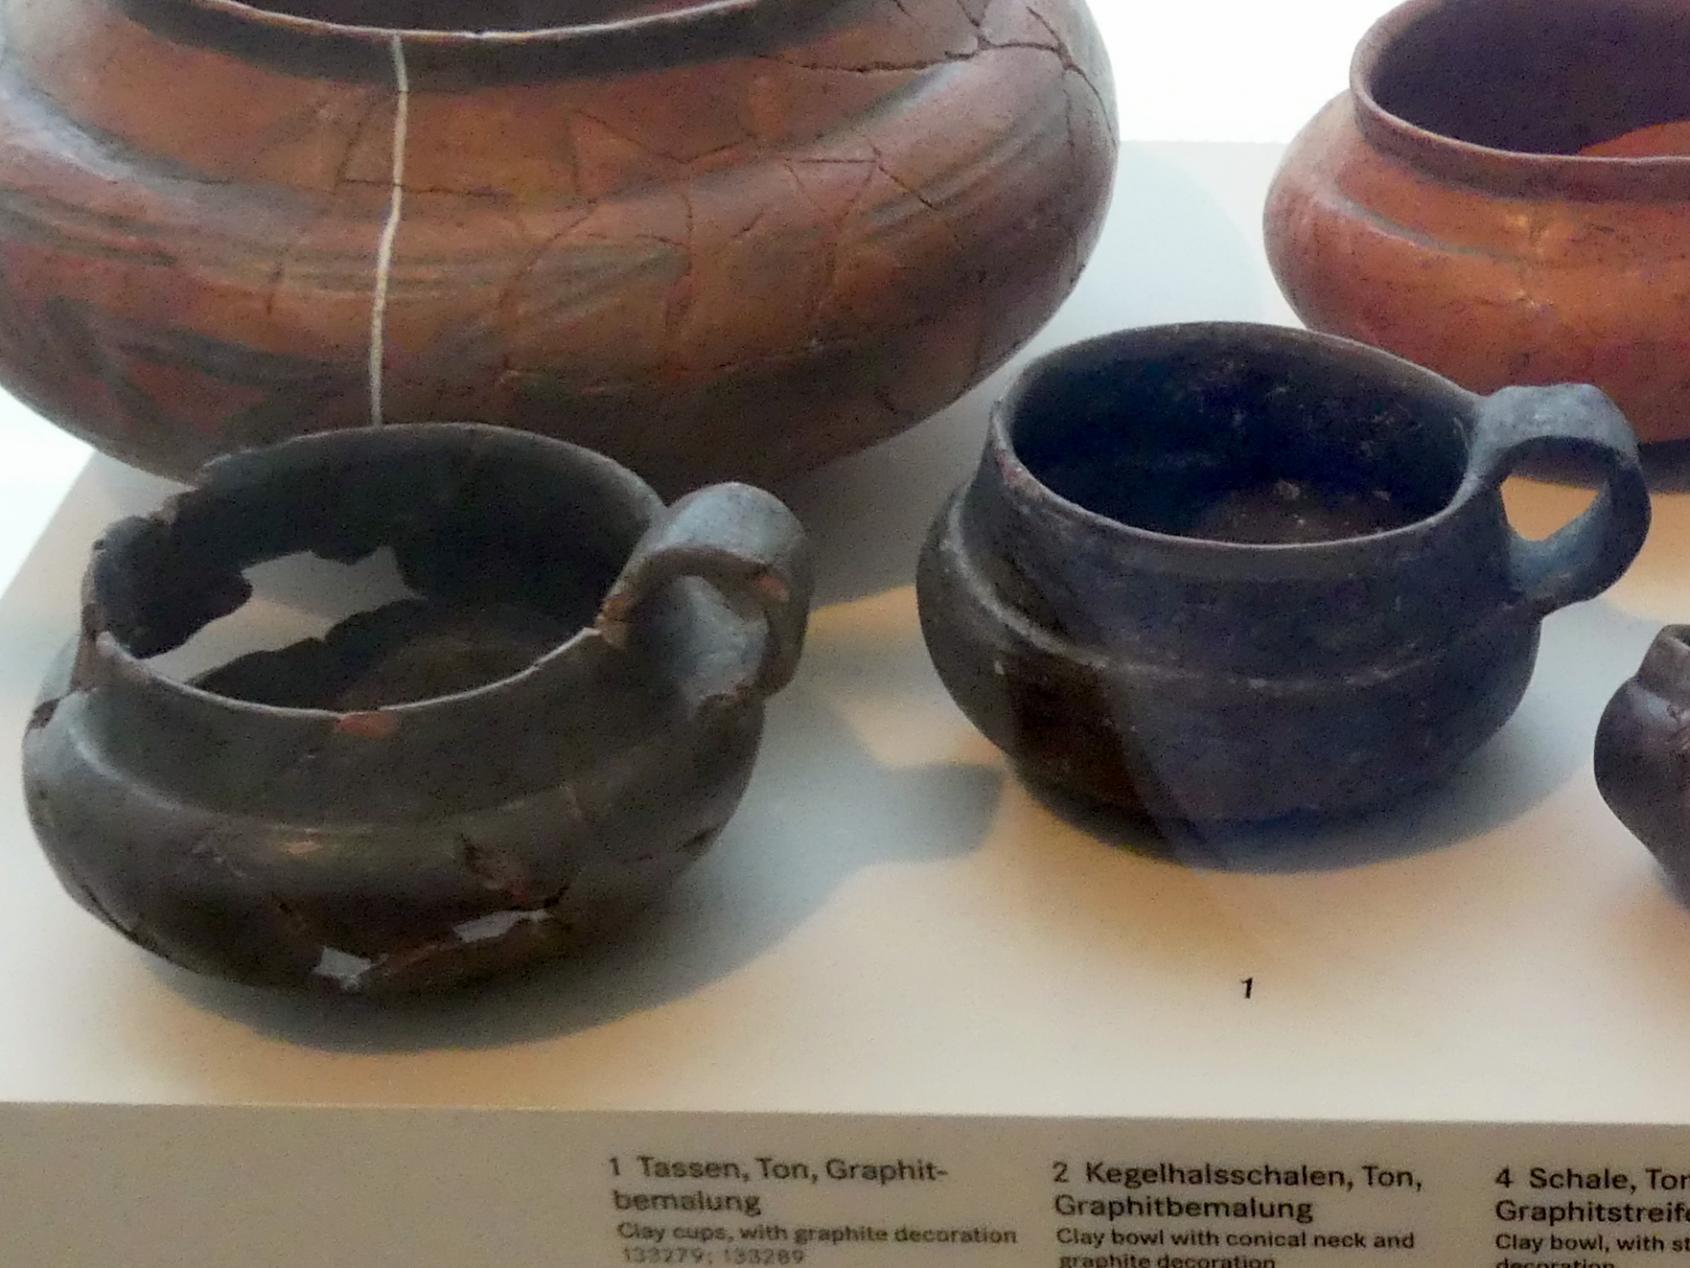 Tassen, Hallstattzeit, 700 - 200 v. Chr., Bild 1/2